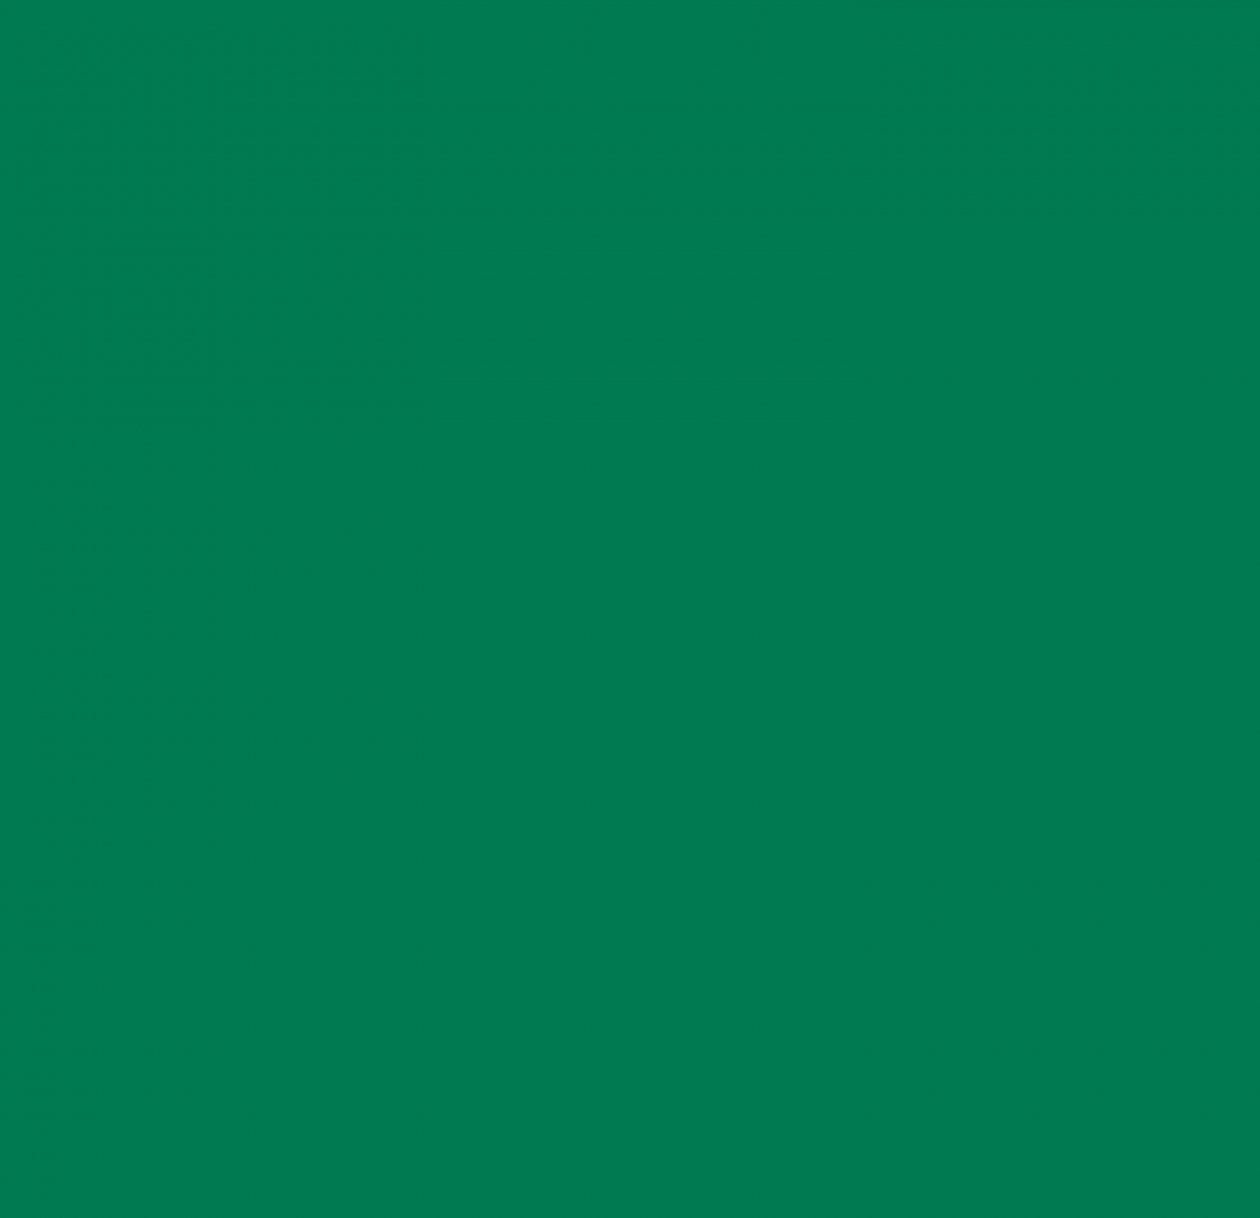 200-2539 Самоклейка D-C-FIX 0.45х15м темн зеленый глянц